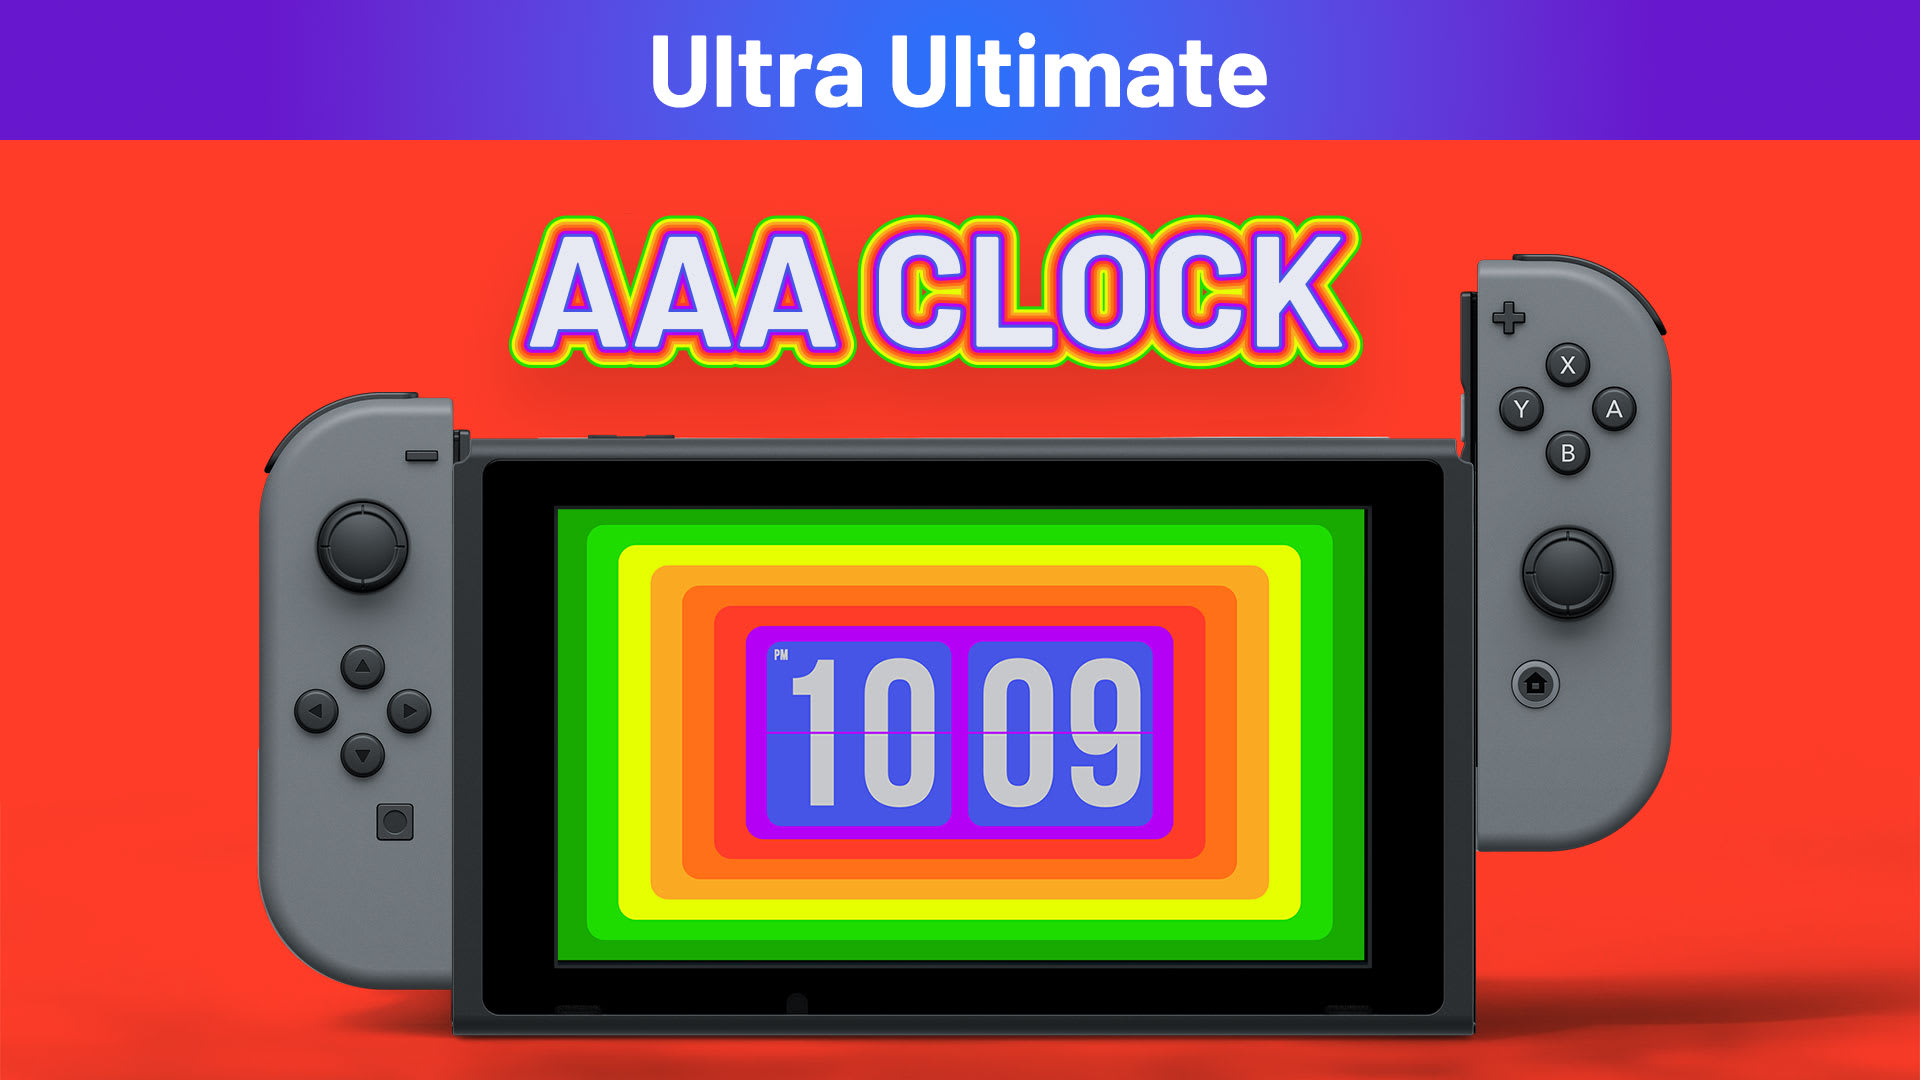 AAA Clock Ultra Ultimate